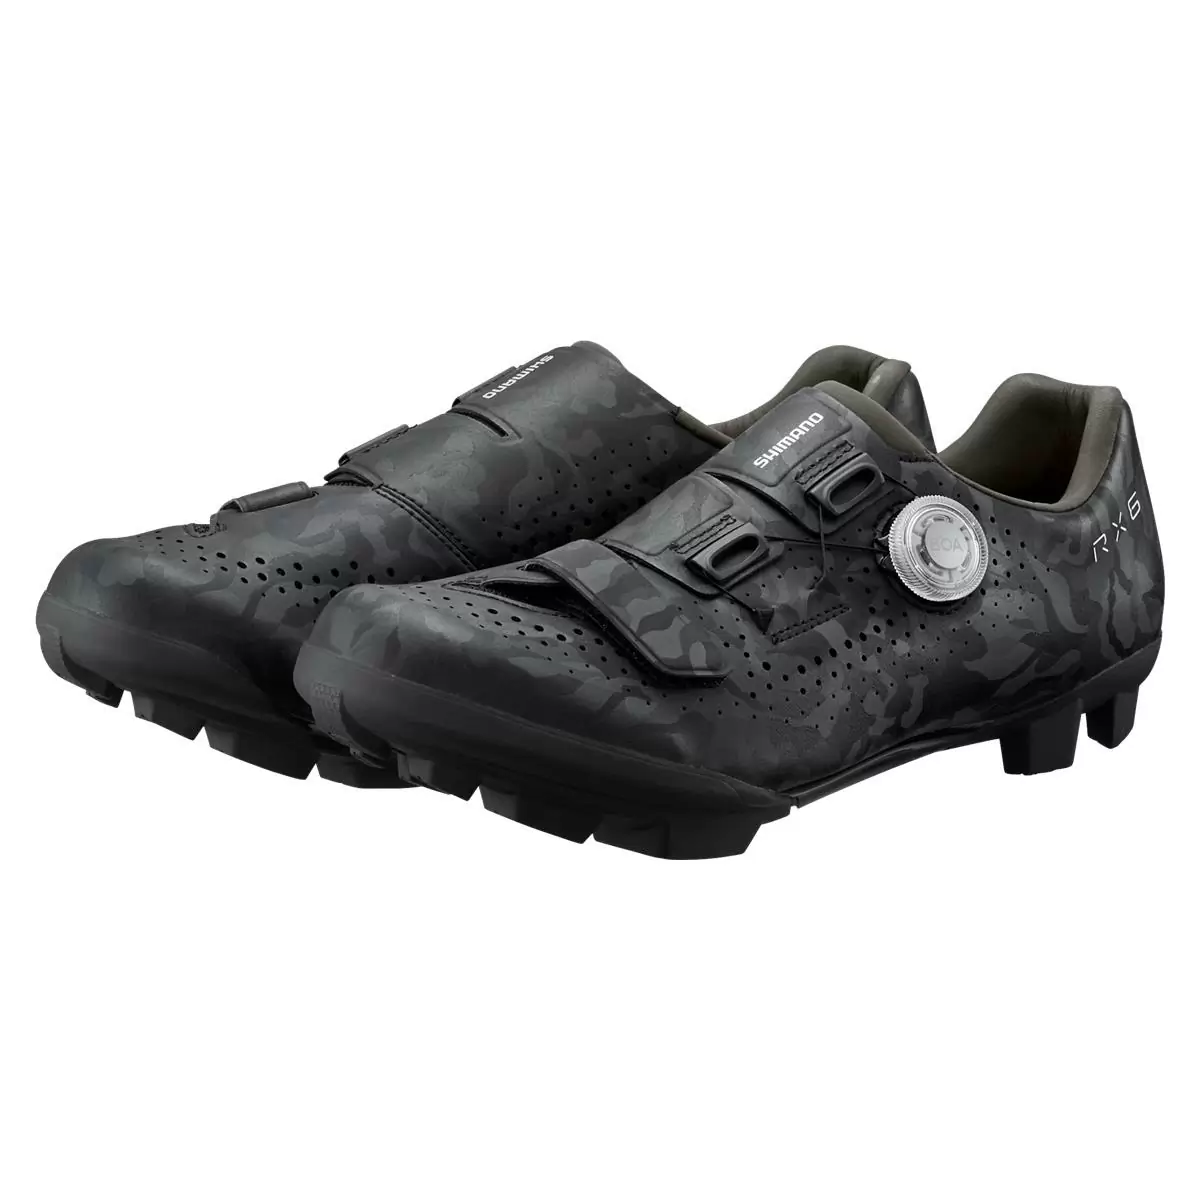 MTB / Gravel Shoes SH-RX600 RX6 Black Size 45 #3